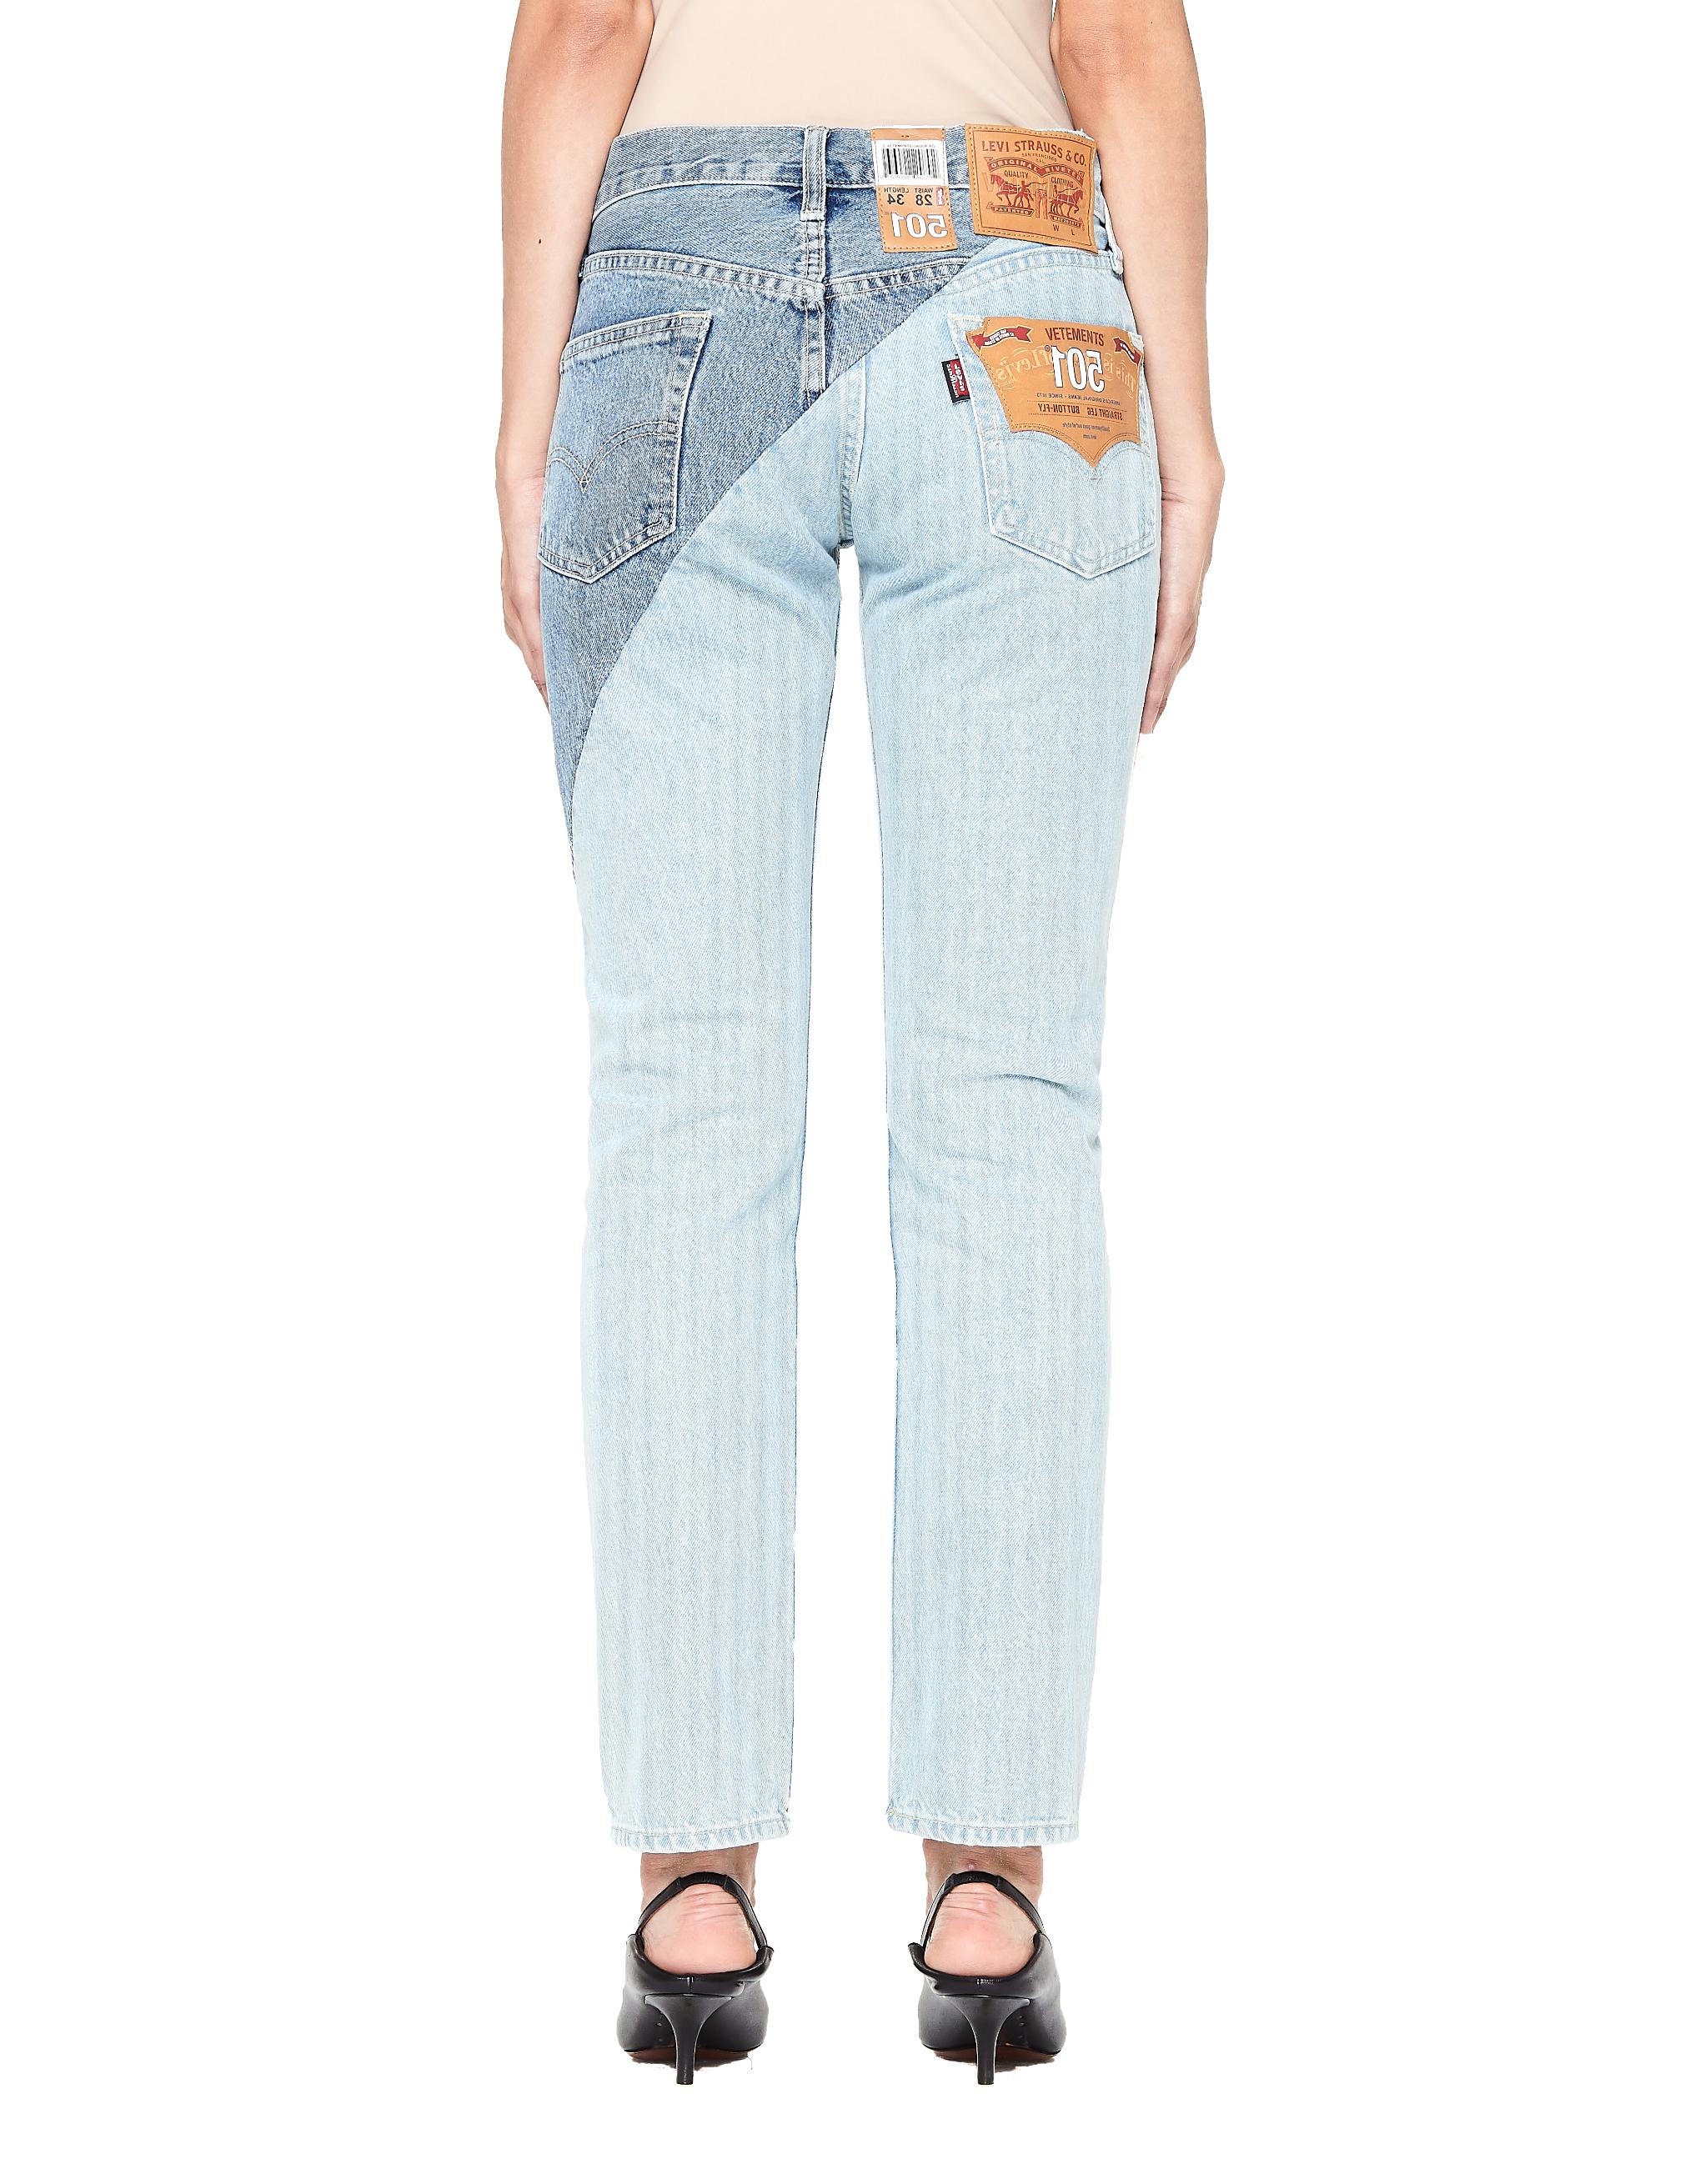 Vetements Cross Cut Cotton Jeans in Blue - Lyst